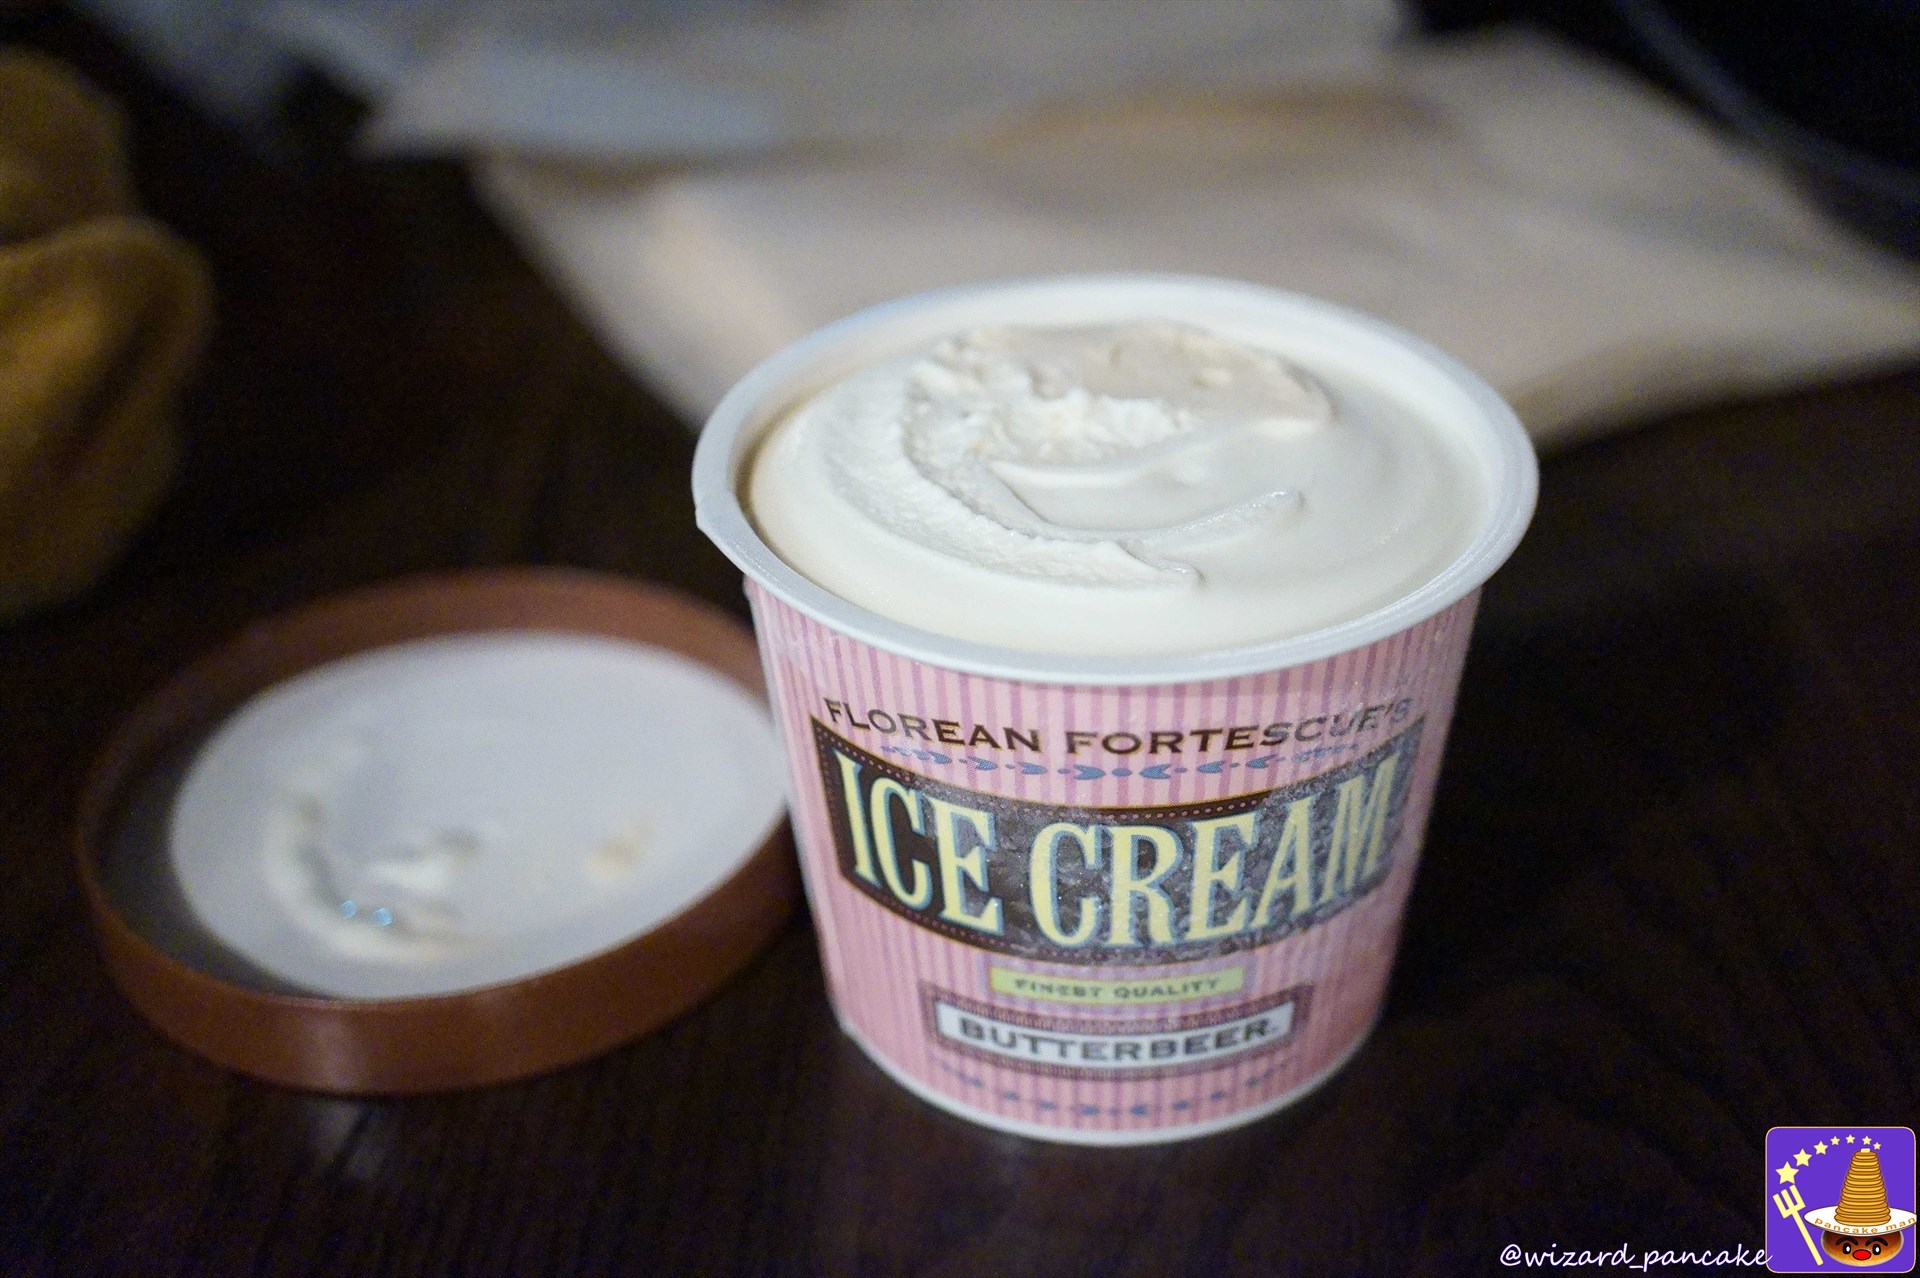 フローリアン・フォーテスキュー・アイスクリームパーラーからなんと『バタービール味』のアイスクリームが登場した♪(*'▽')ノ「バタービールのアイス♪」